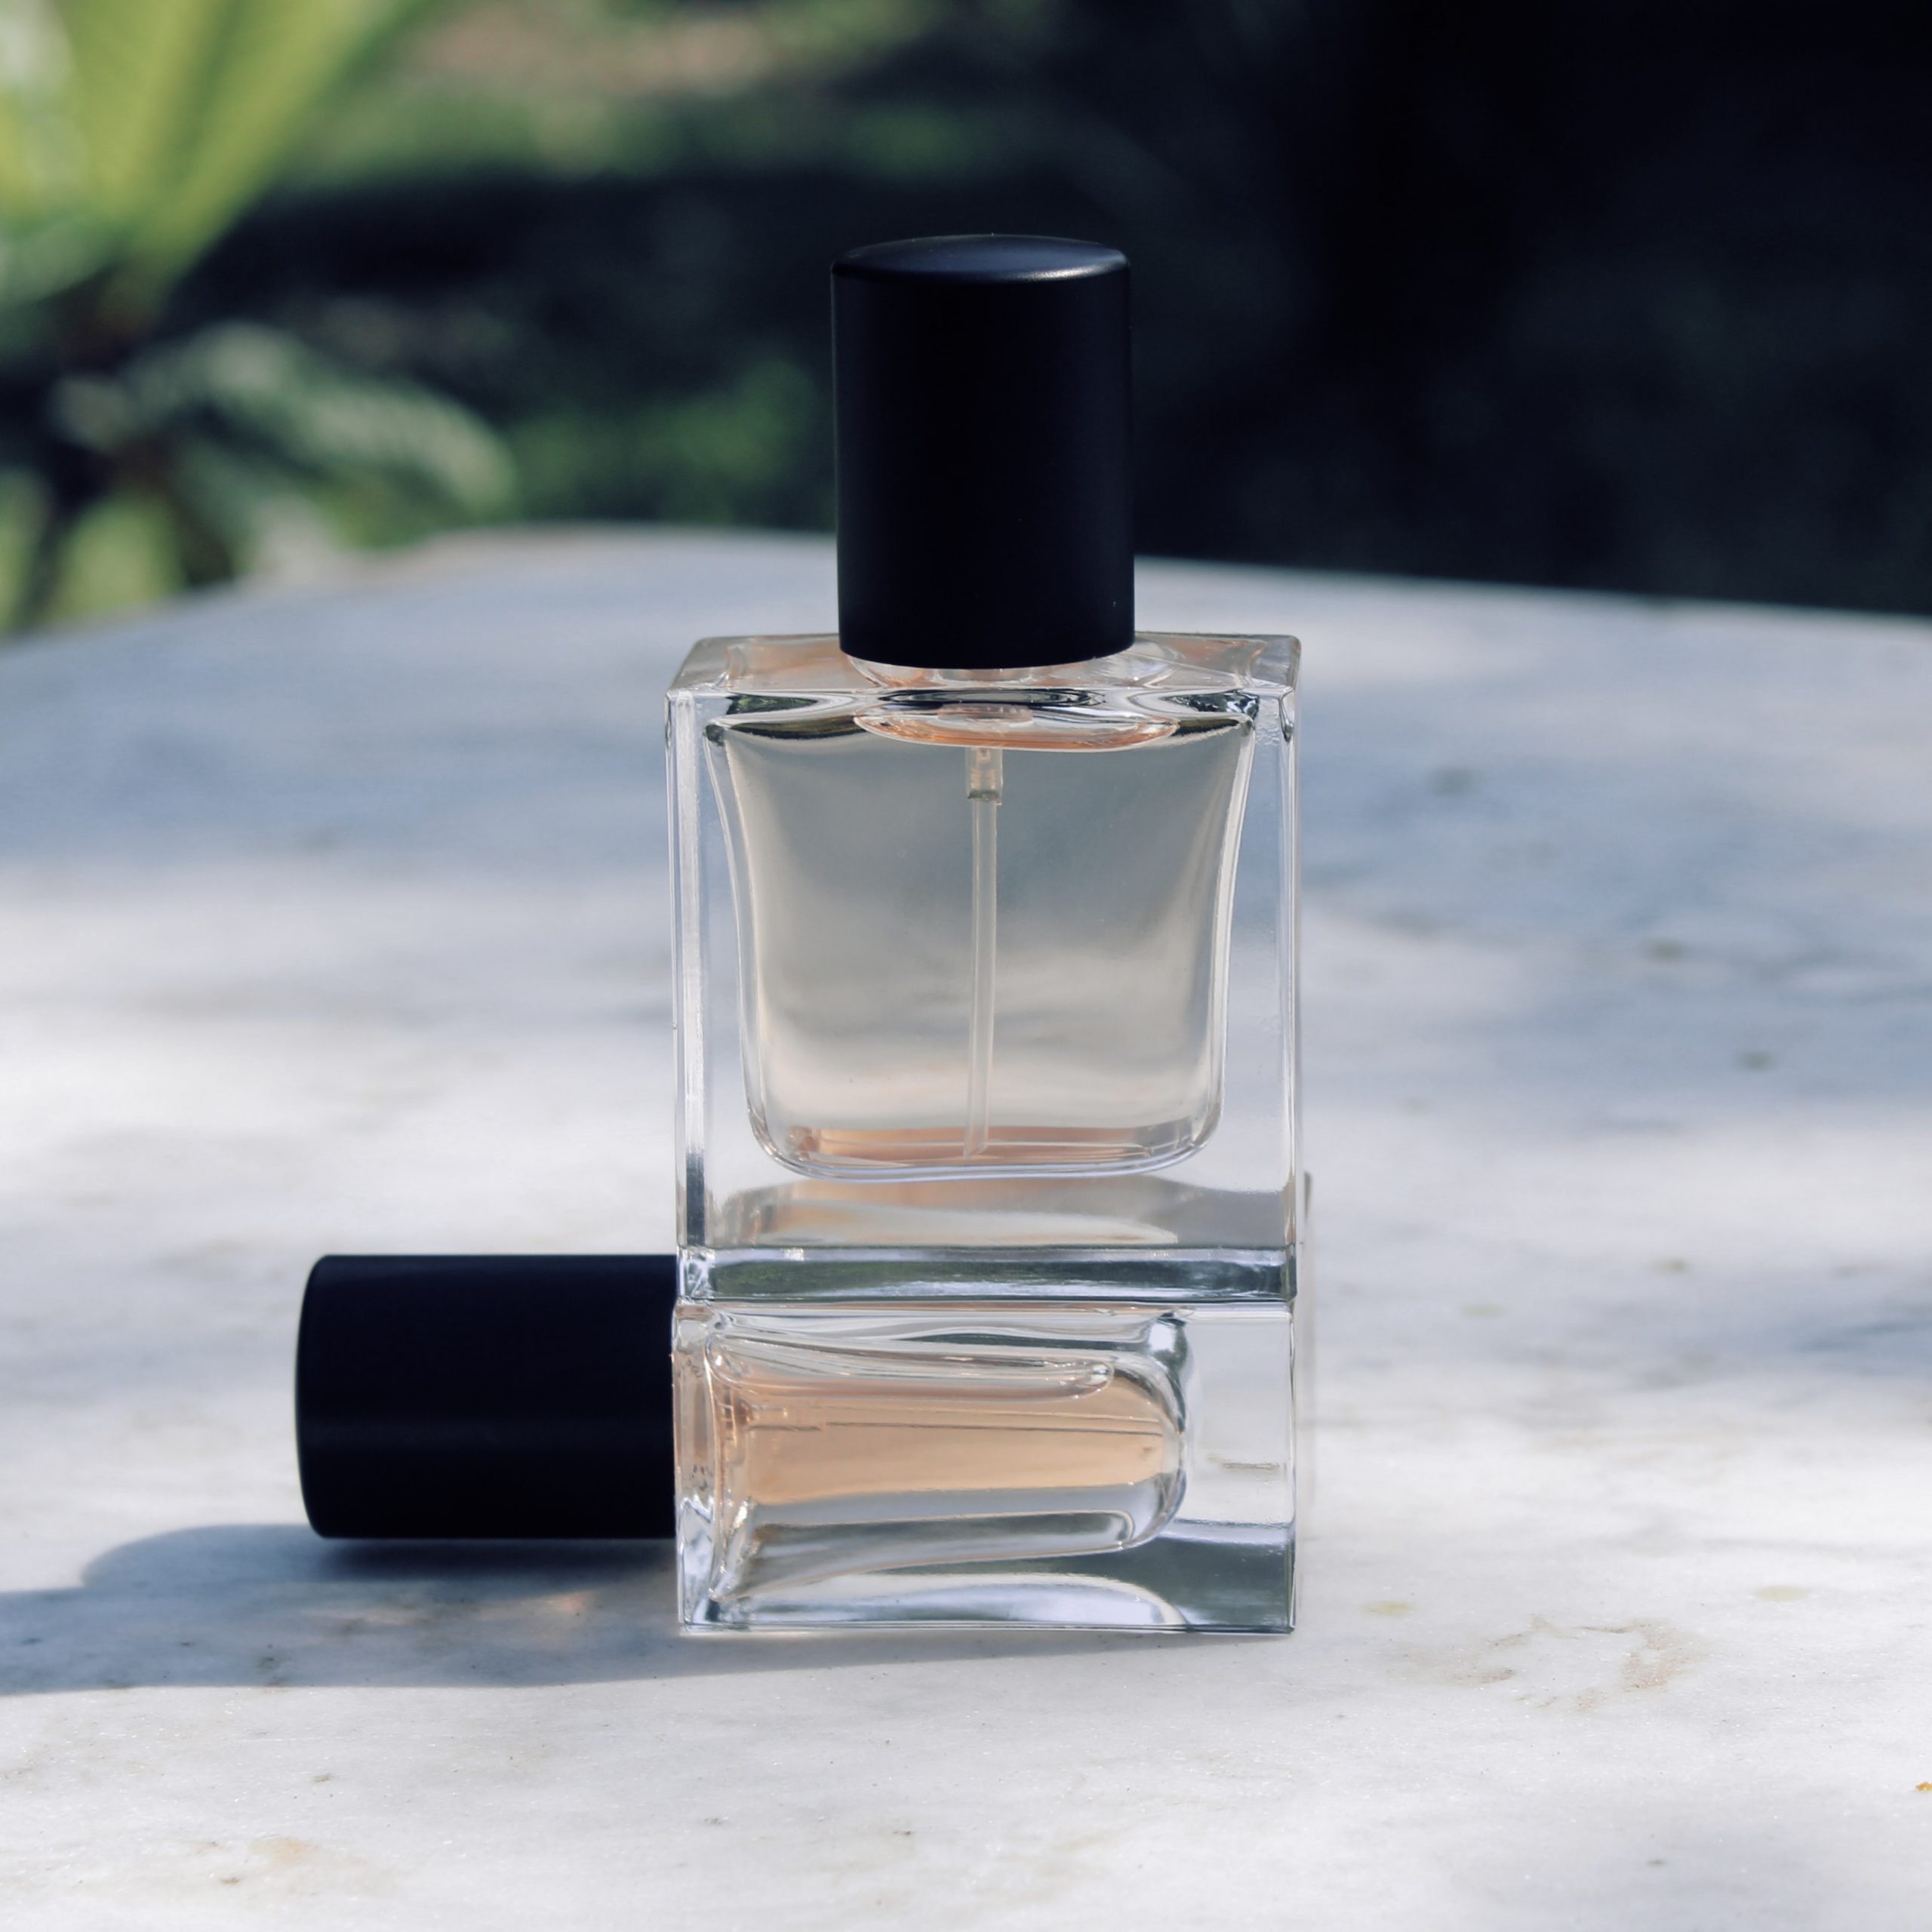 Tom Ford damskie perfumy - Styl i elegancja w jednym flakonie.